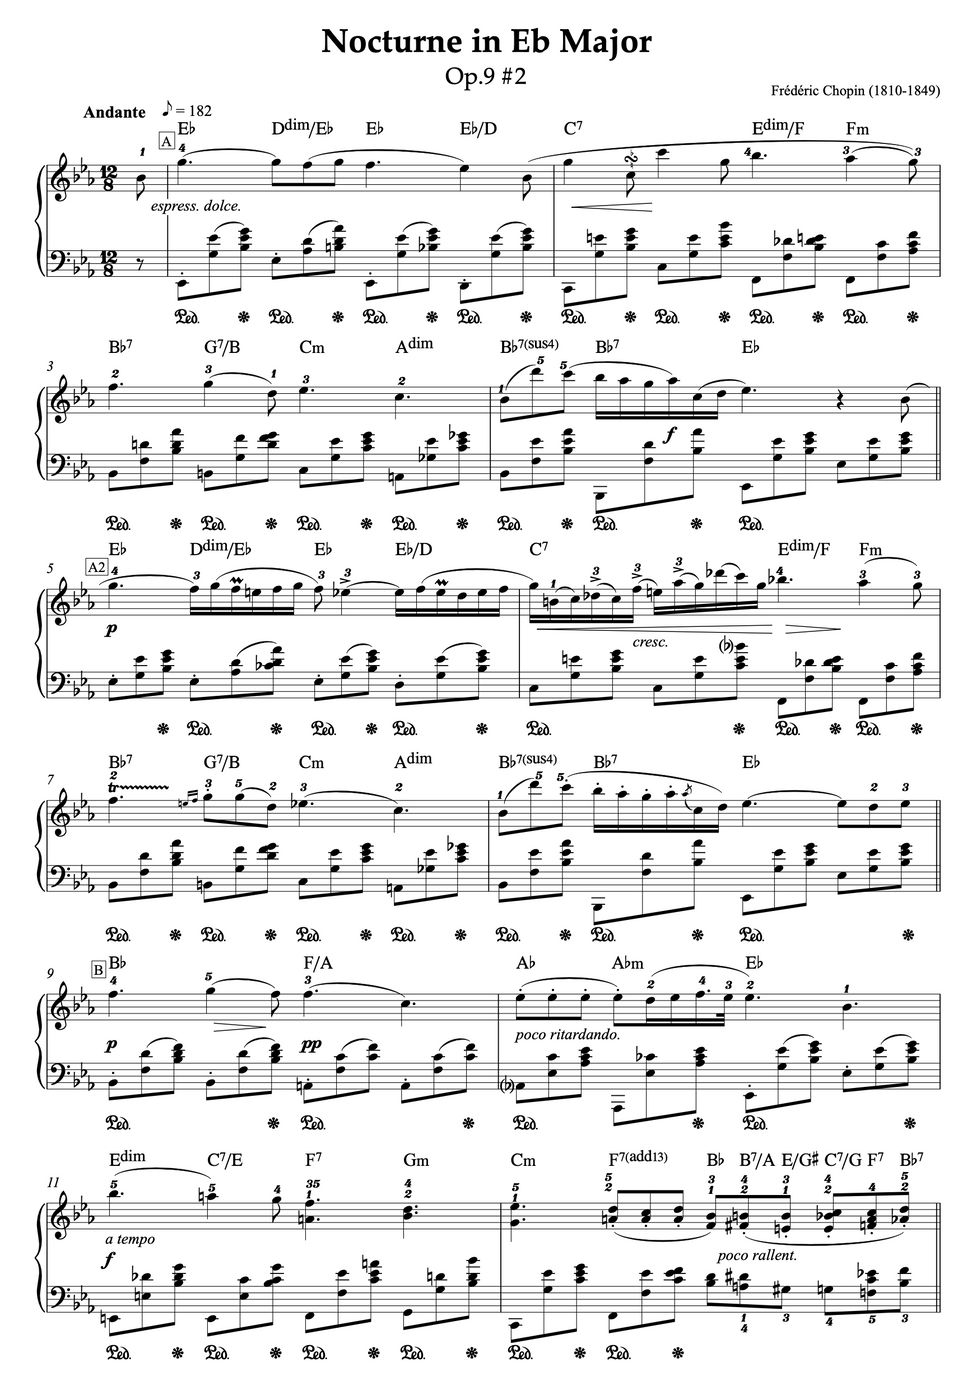 ショパン - 【ジャズコード付き】Noctune in Eb Major Op.9 No.2 - Frederic Chopin (ショパン作曲『ノクターン〜夜想曲第2番』コード付きピアノ譜) (ピアノ・ソロ/クラシック/コード付き) by ebony-ivory